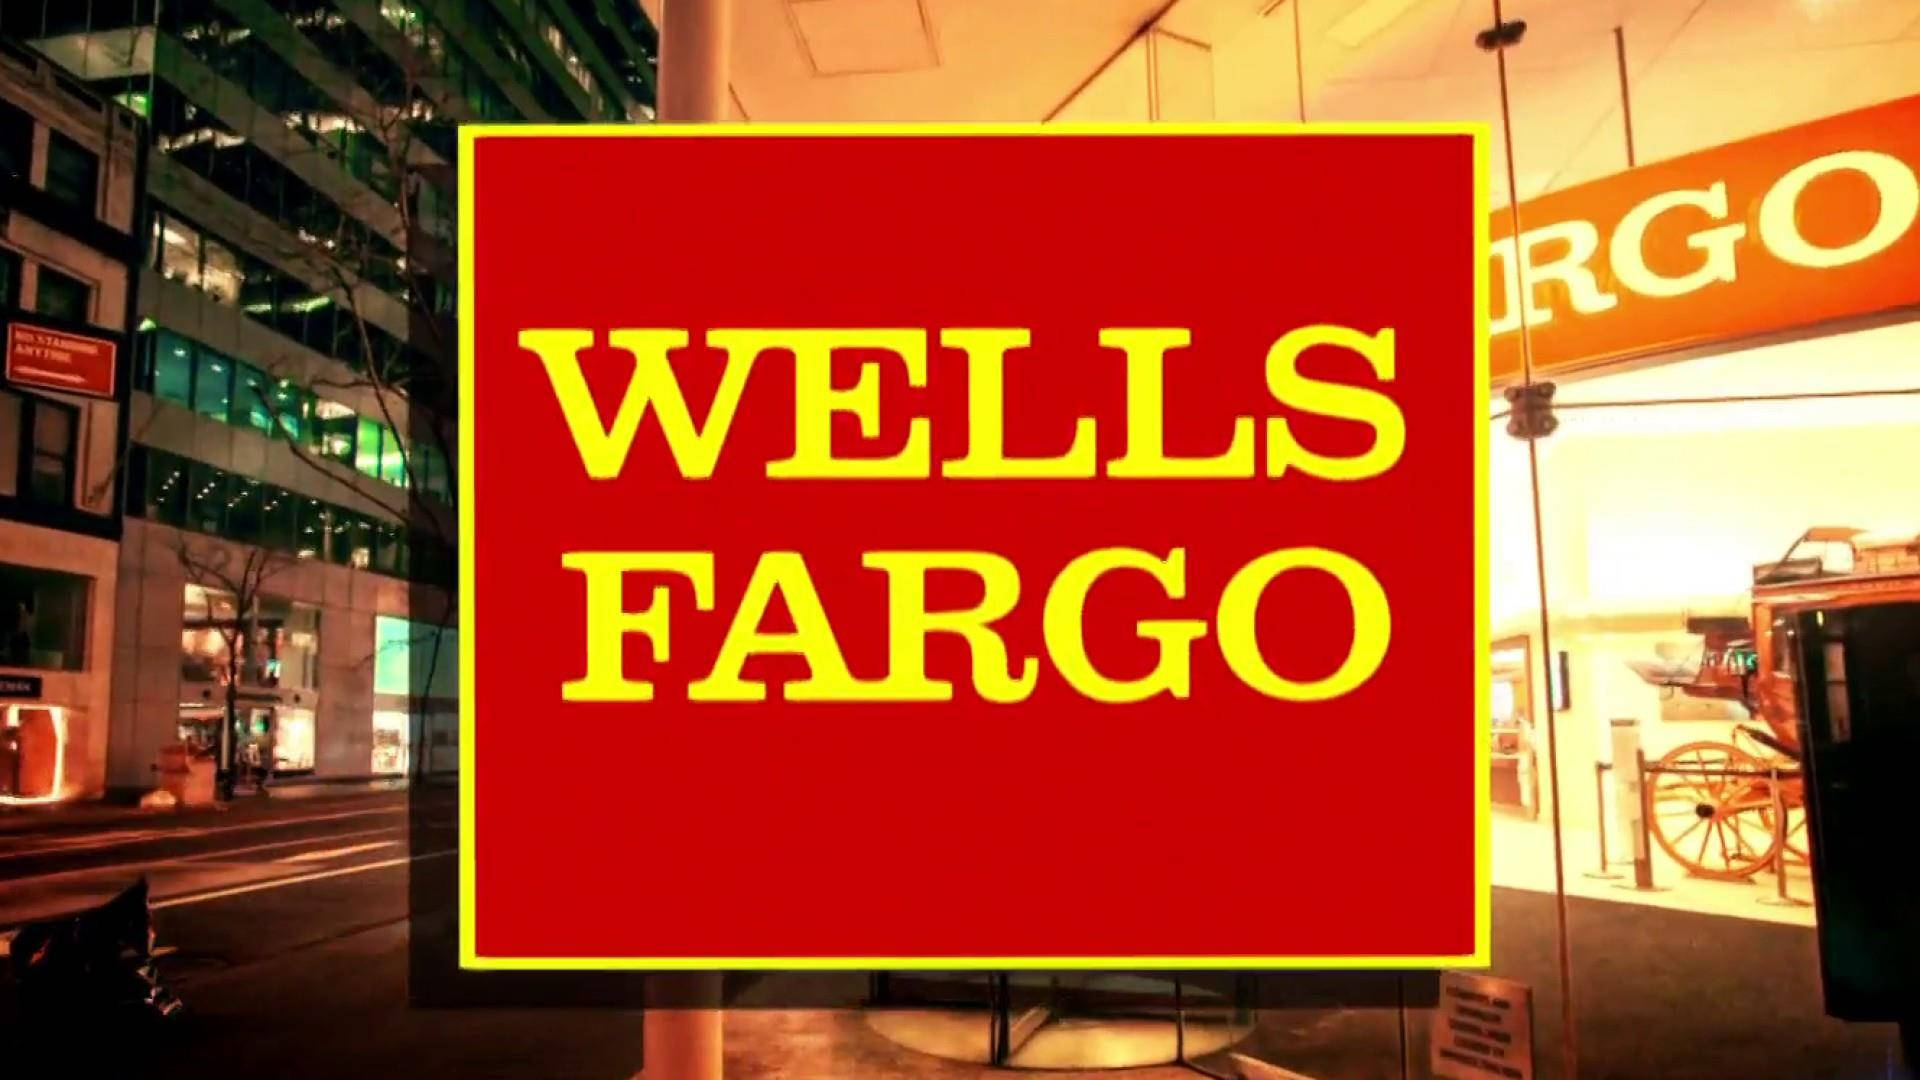 Sinalvermelho E Amarelo Do Wells Fargo. Papel de Parede